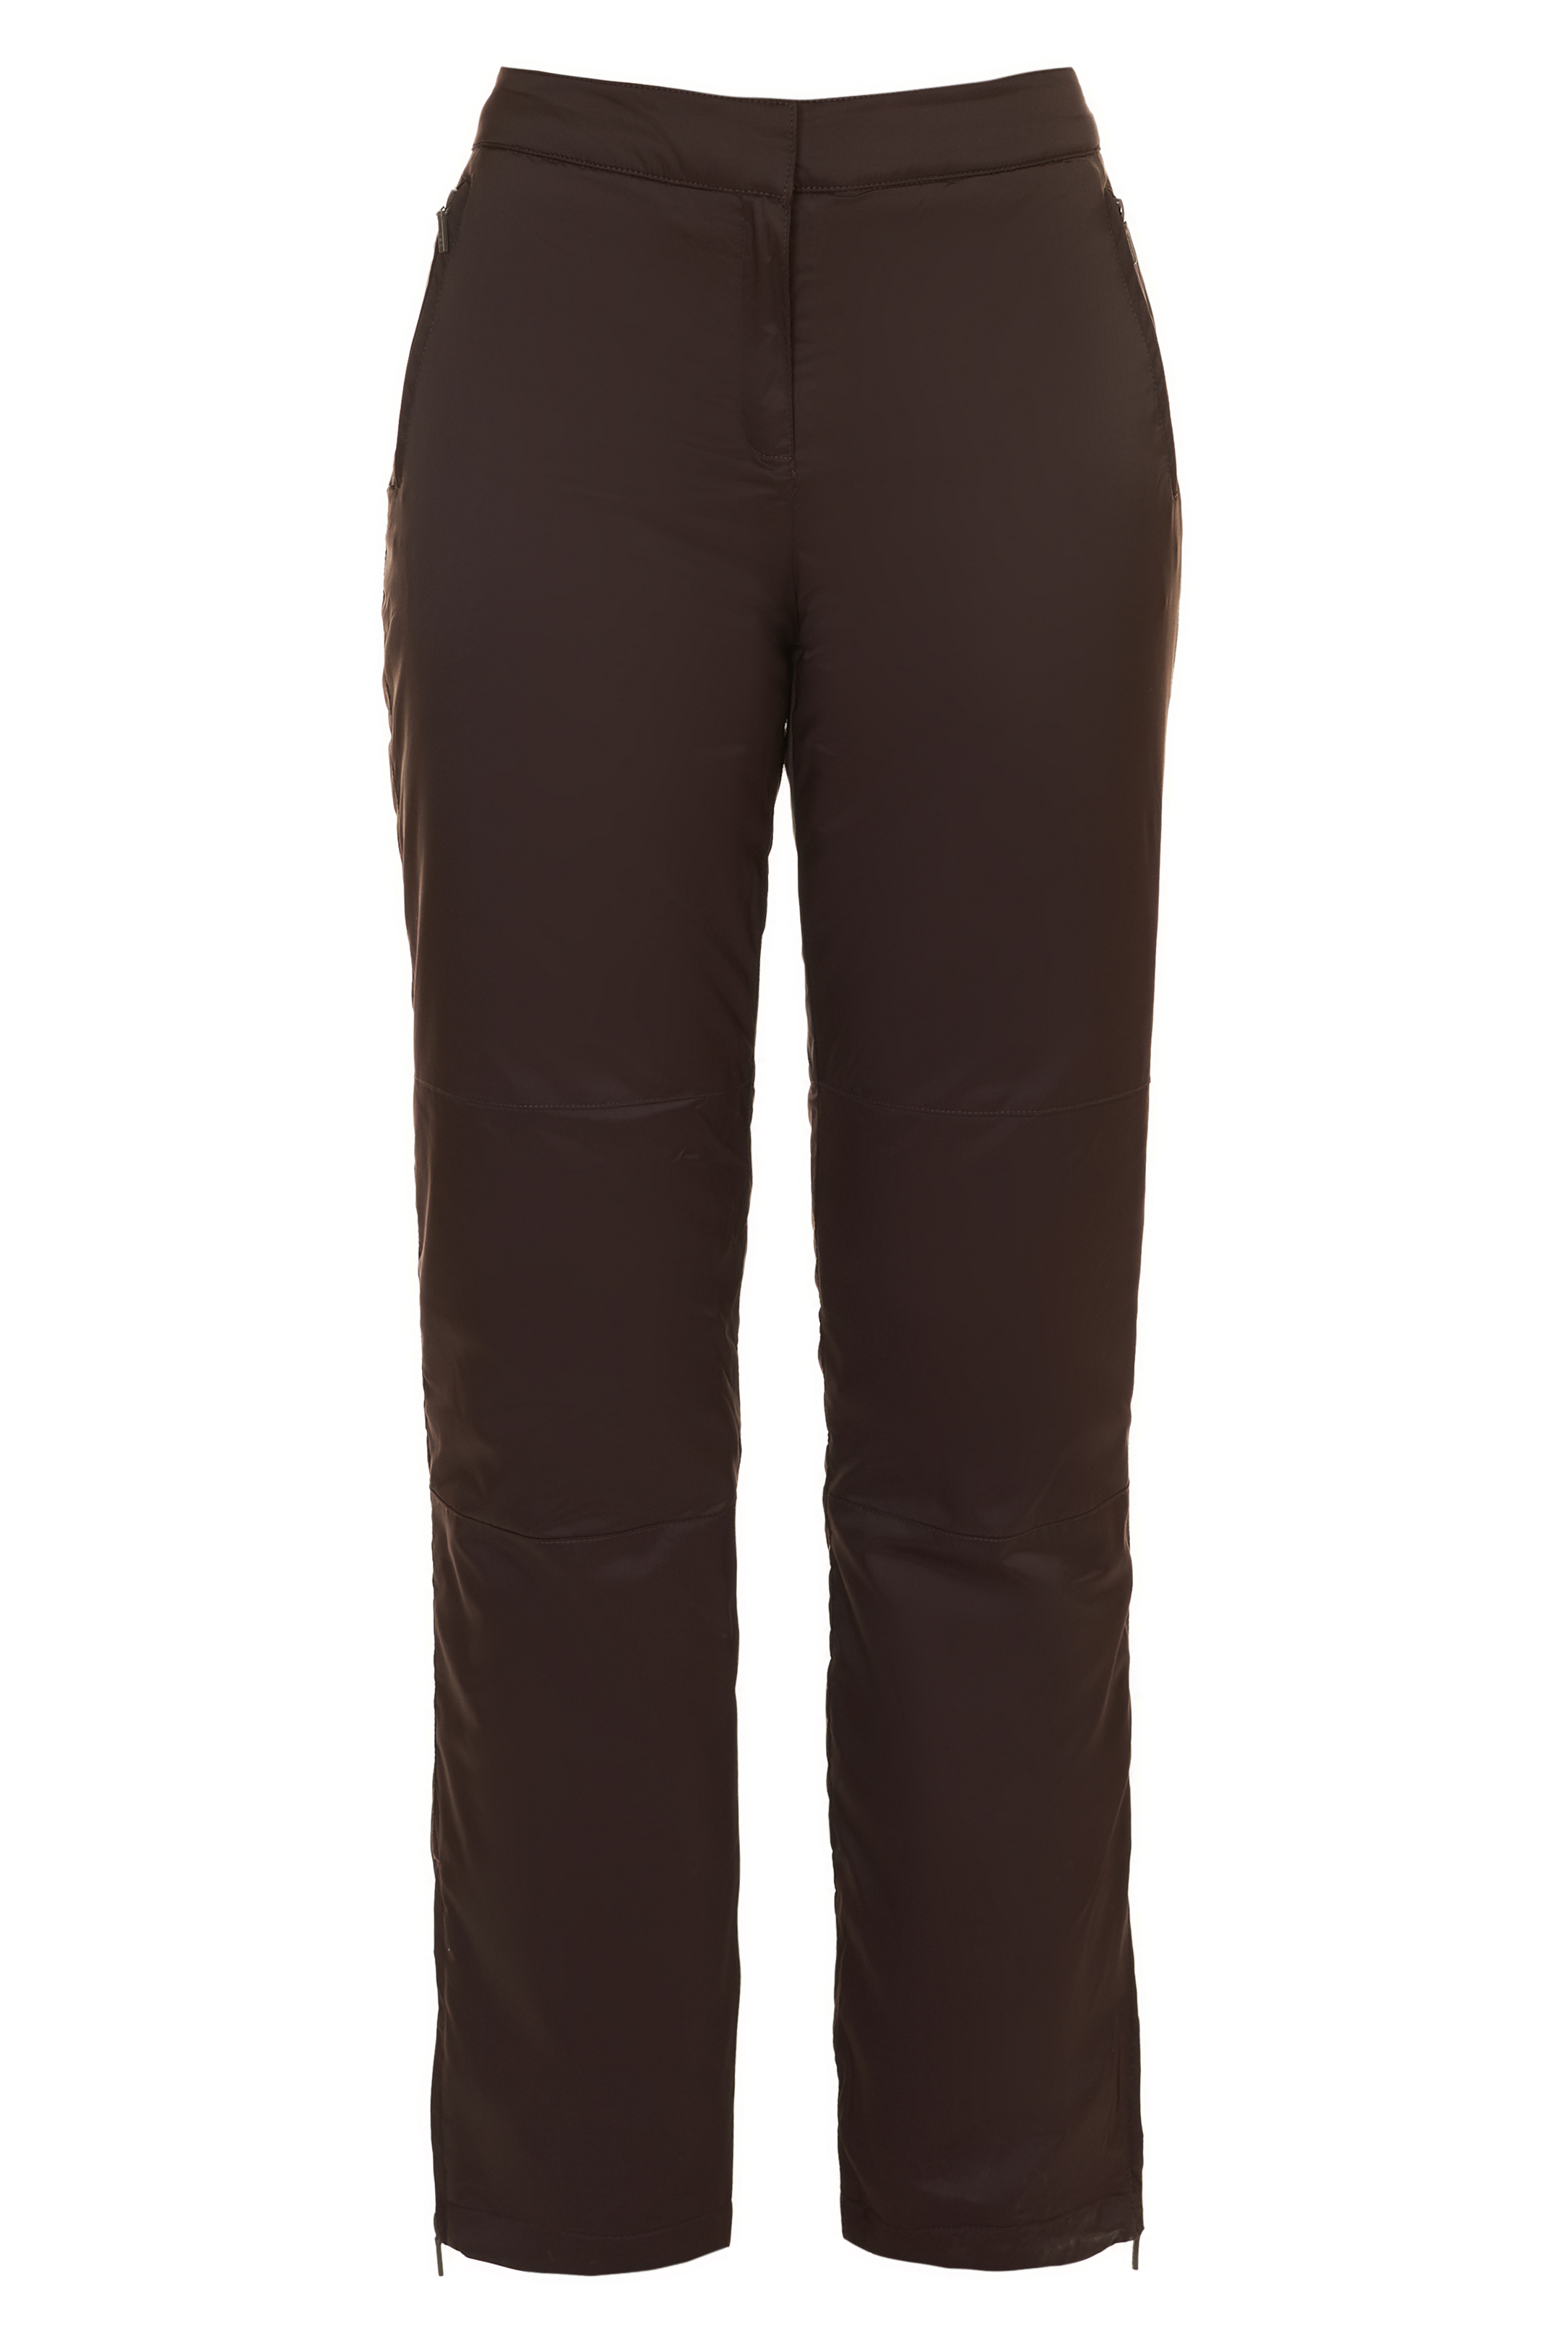 Утеплённые брюки с молниями (арт. baon B297505), размер XL, цвет коричневый Утеплённые брюки с молниями (арт. baon B297505) - фото 3